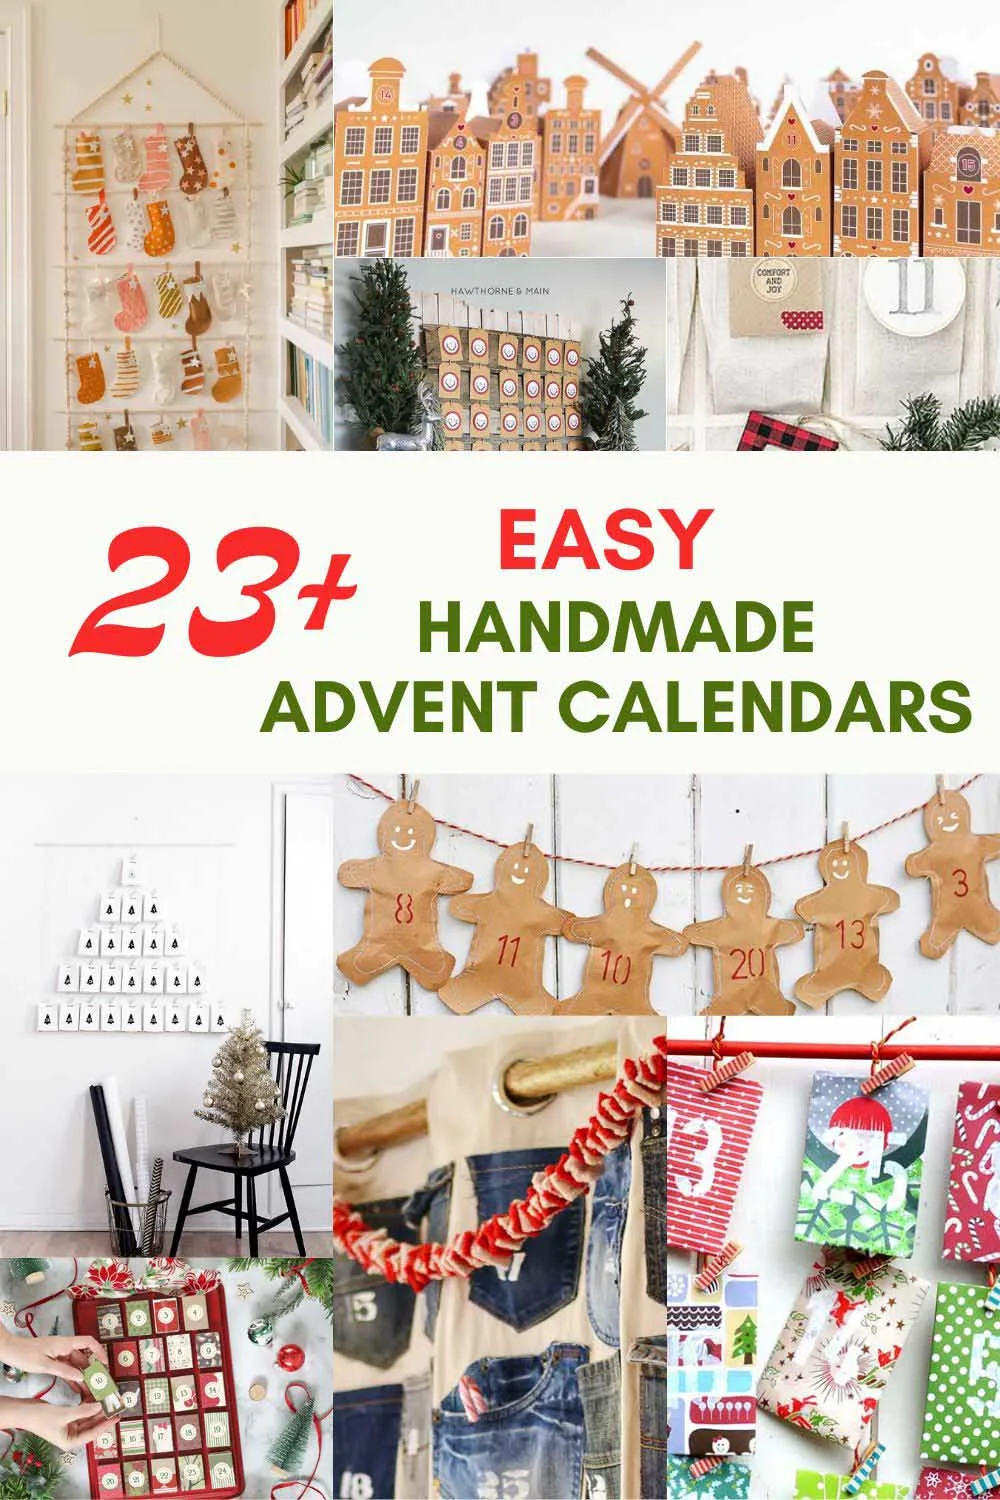 https://www.pillarboxblue.com/wp-content/uploads/2017/11/handmade-advent-calendar-ideas-Pin-.jpg.webp